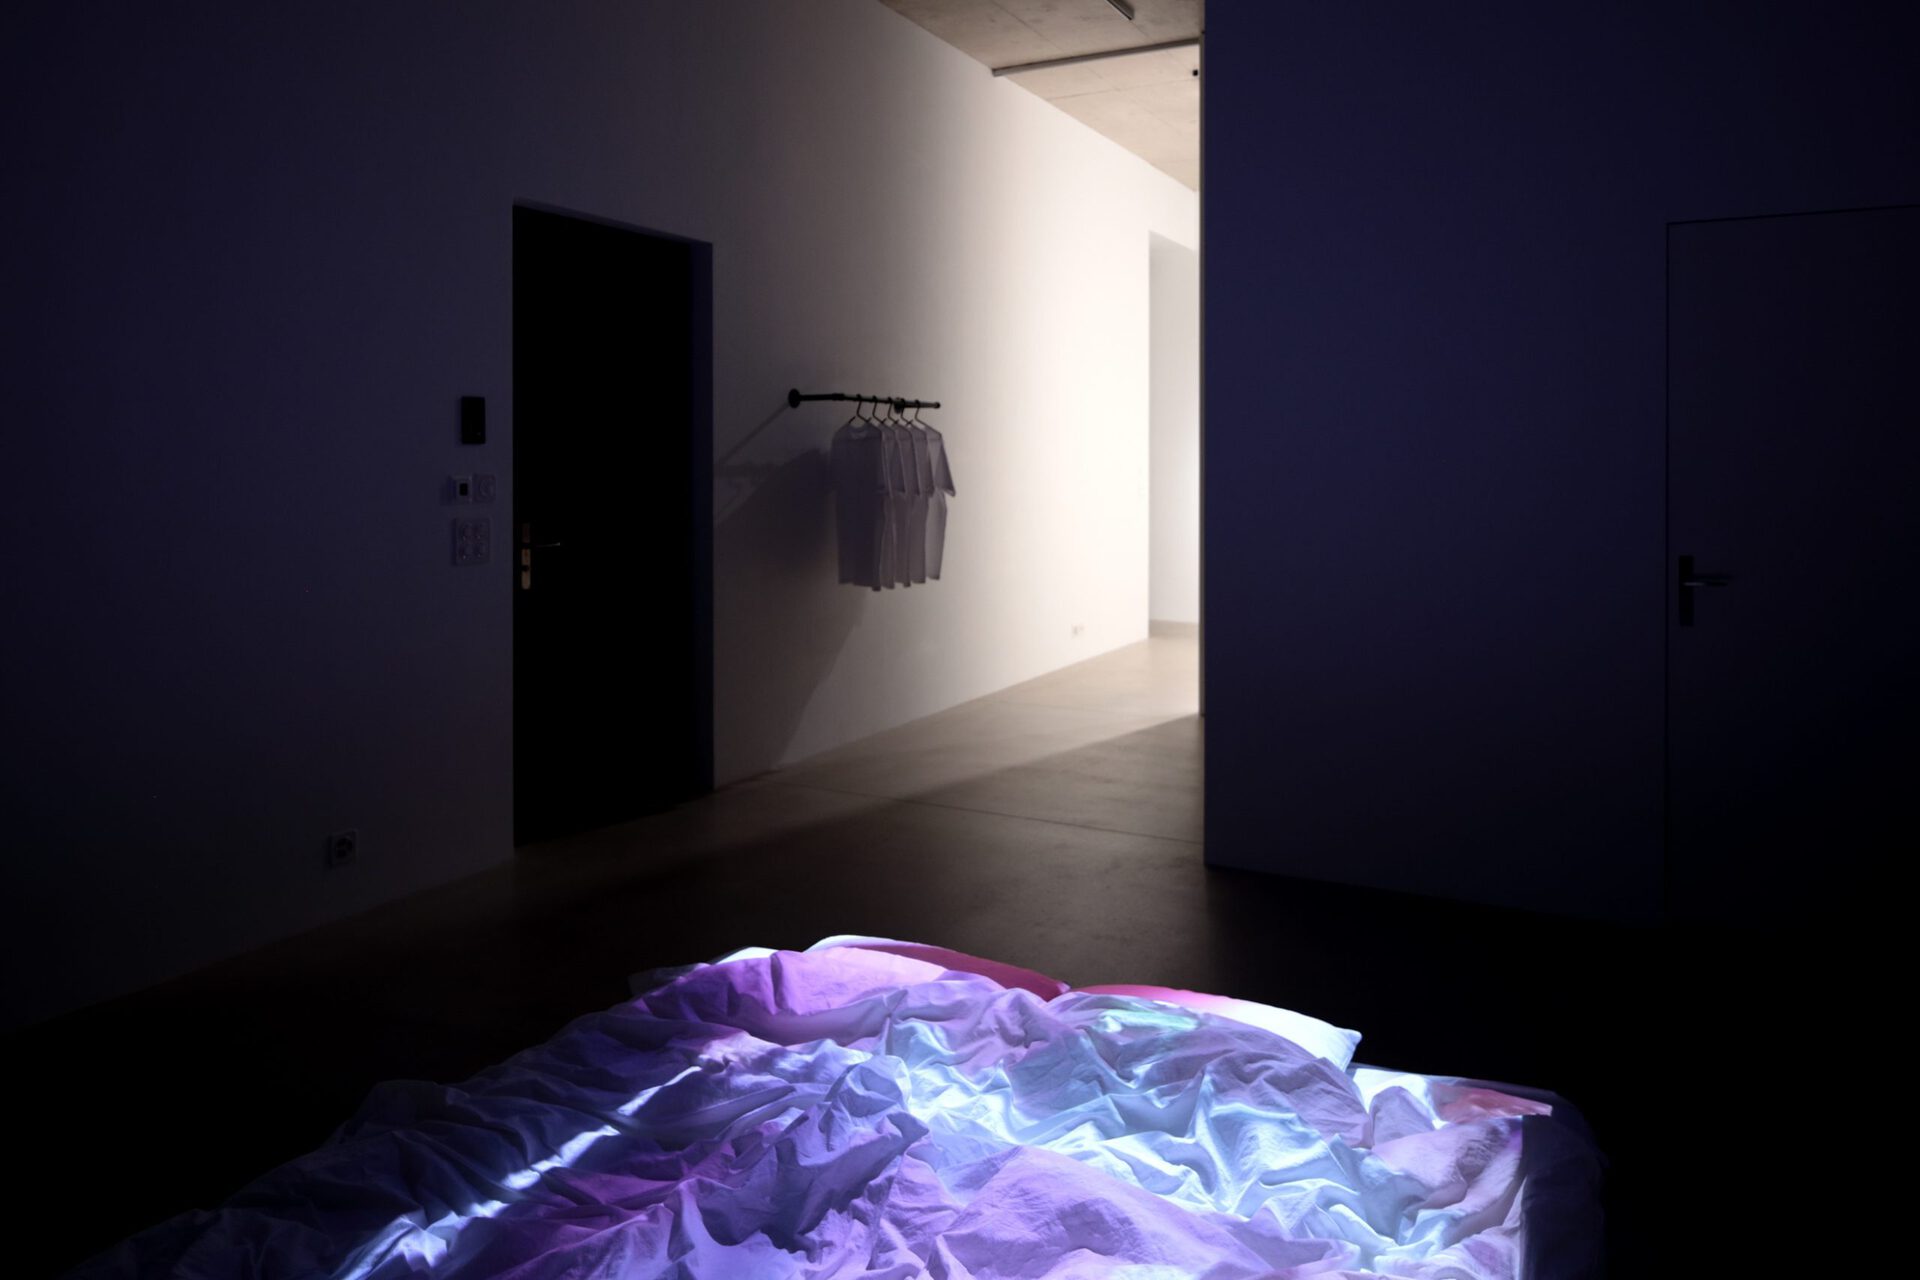 Isabella Fürnkäs, Siamese Dreams at Windhager von Kaenel, Zurich, 2021